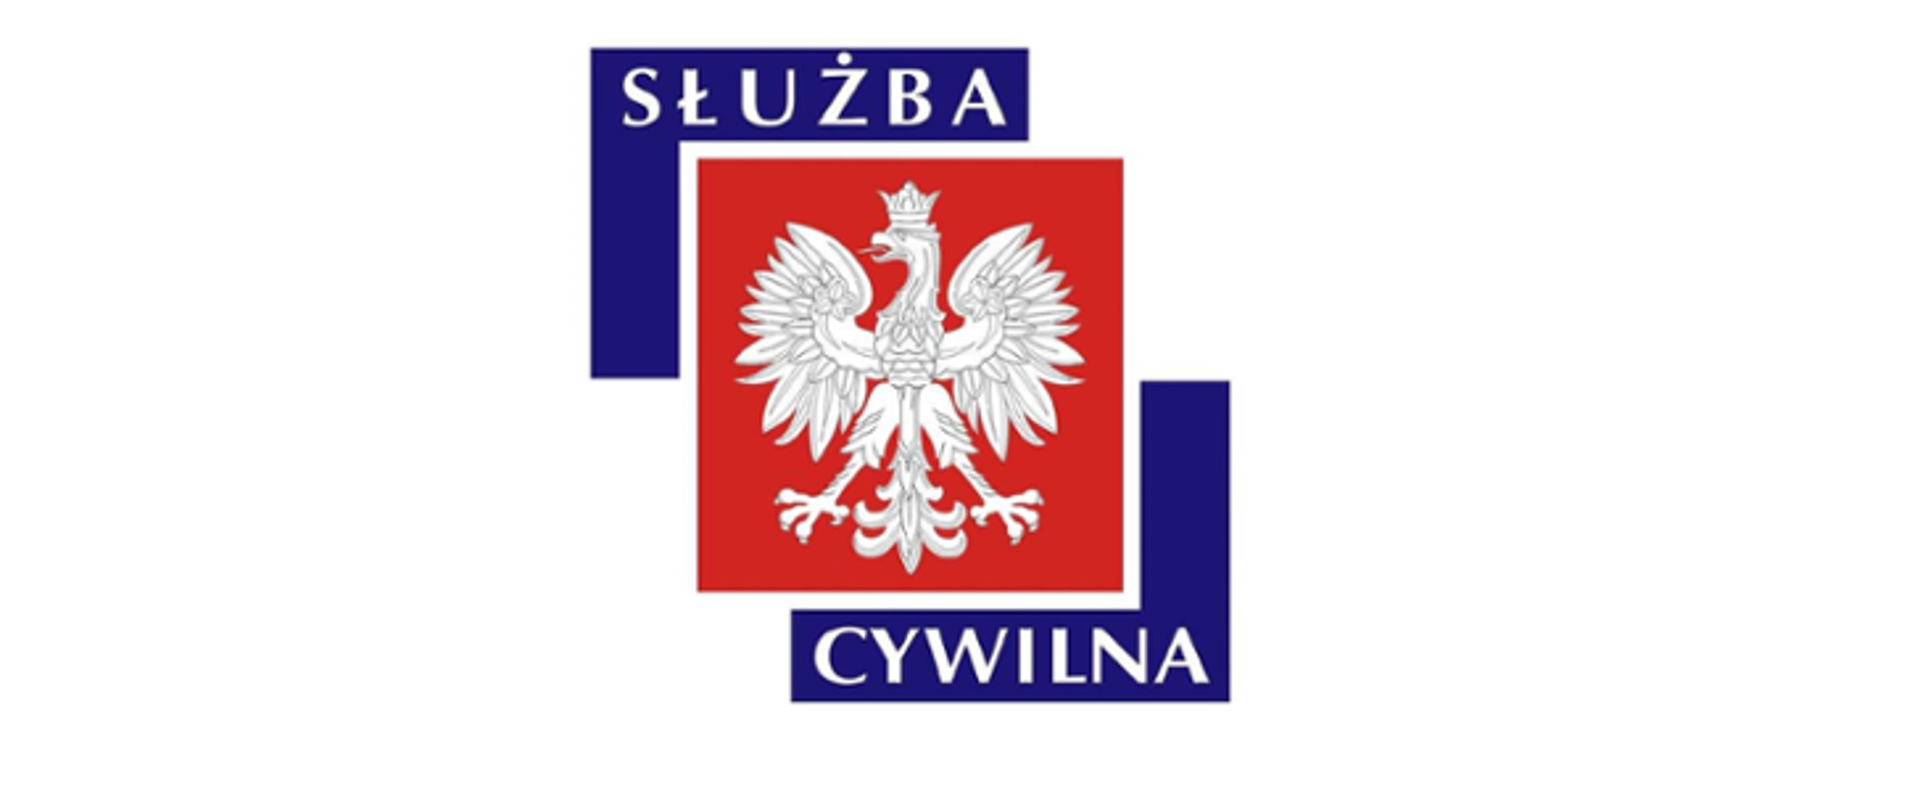 Zdjęcie przestawia logo służby cywilnej